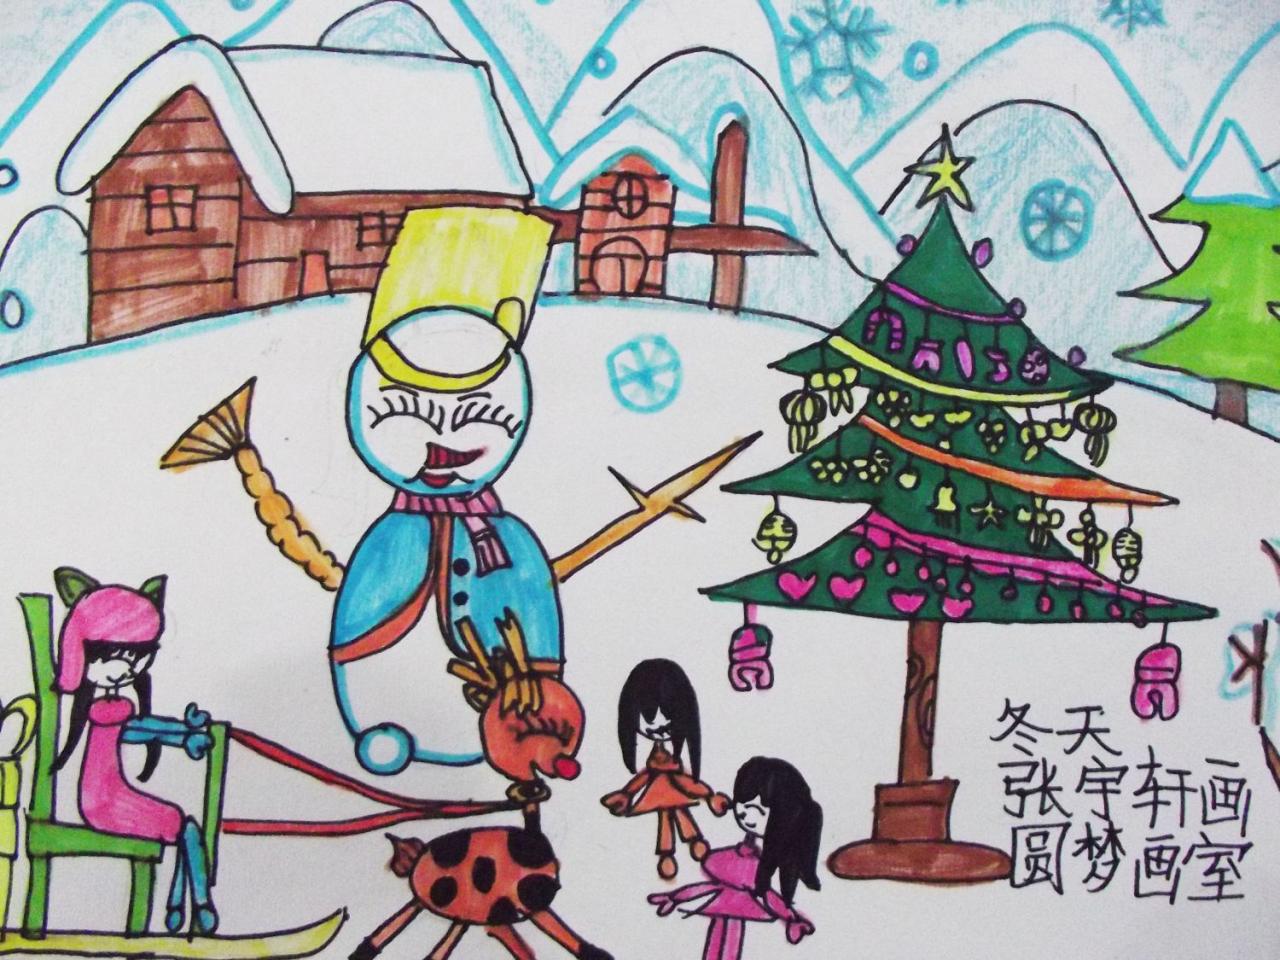 冬天 圣诞节 雪橇 雪人 张宇轩画